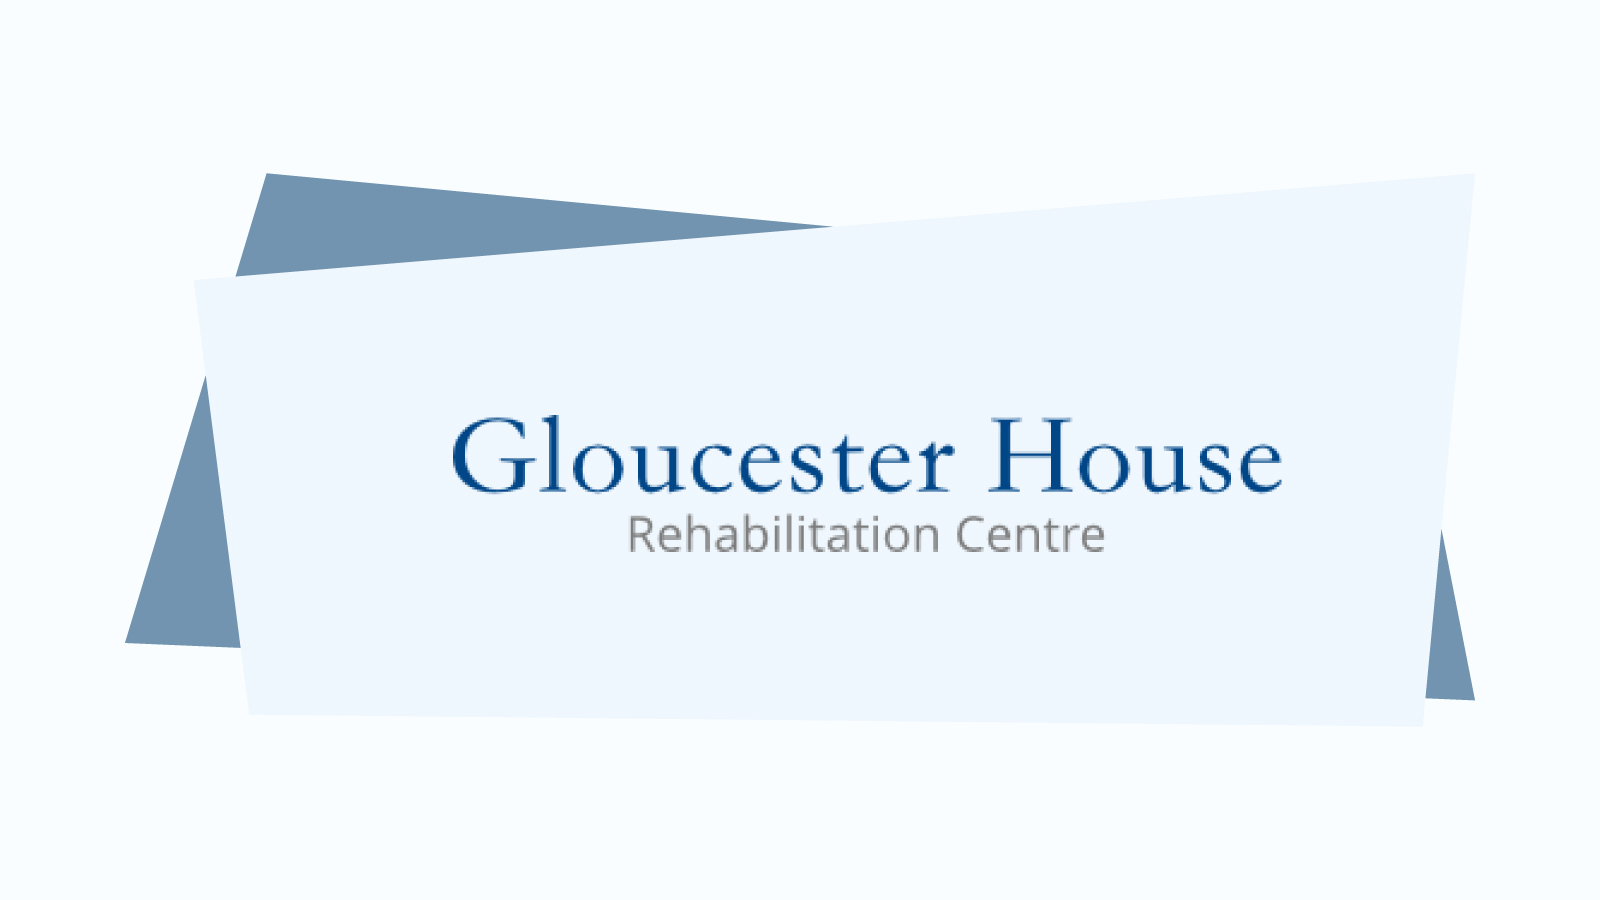 Gloucester House Rehabilitation Centre